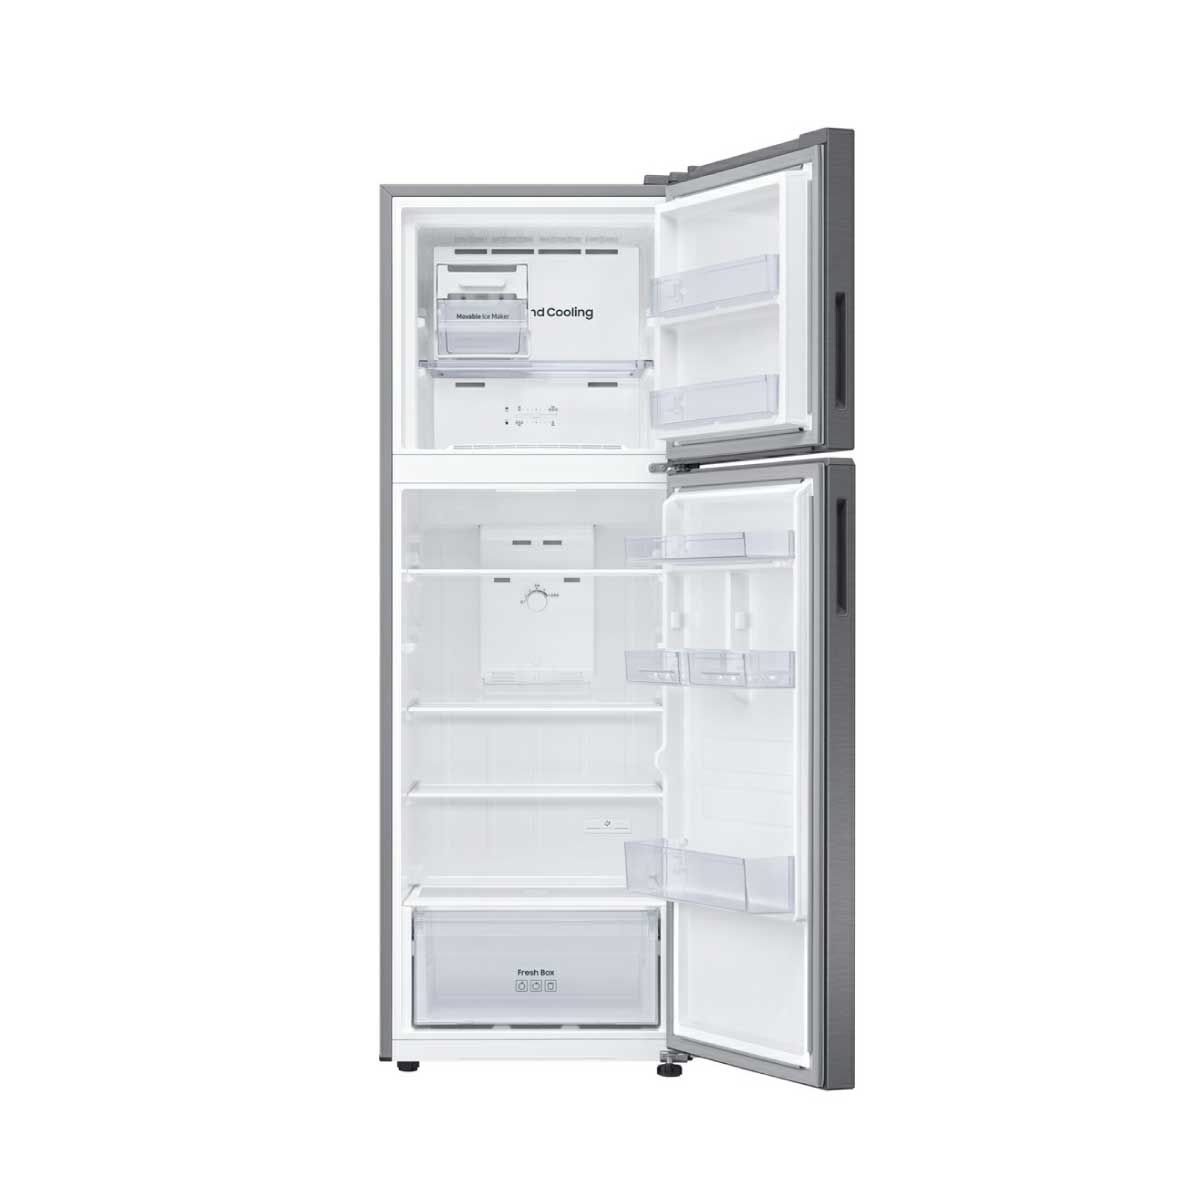 SAMSUNG ตู้เย็น 2 ประตู 10.8Q สีเทา รุ่น RT31CG5020S9ST